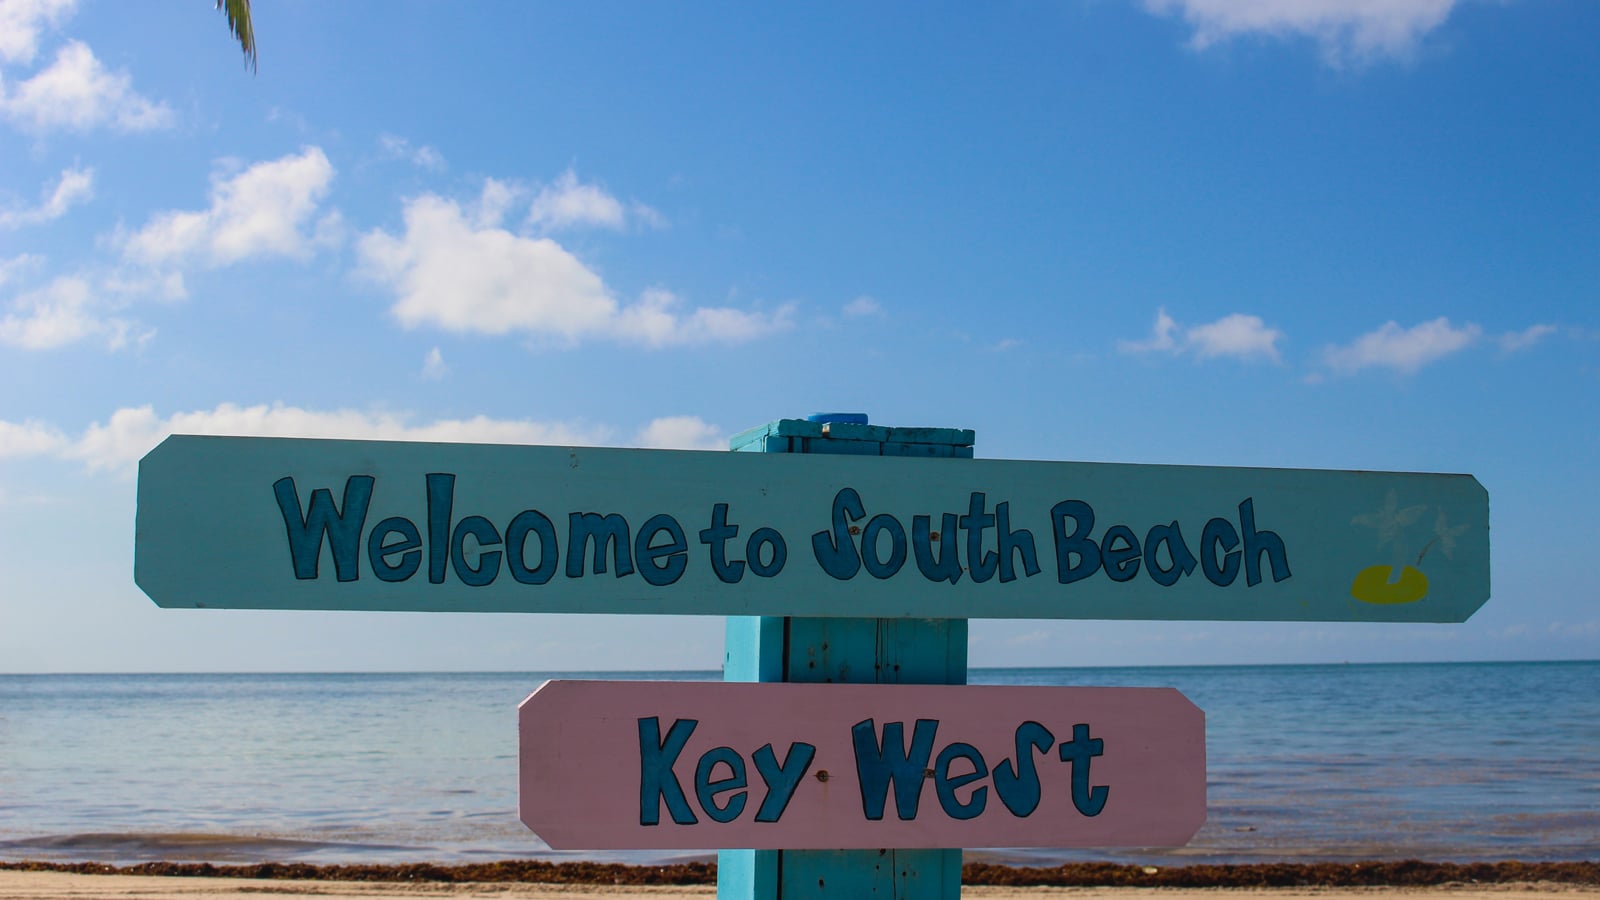 South Beach, Key West